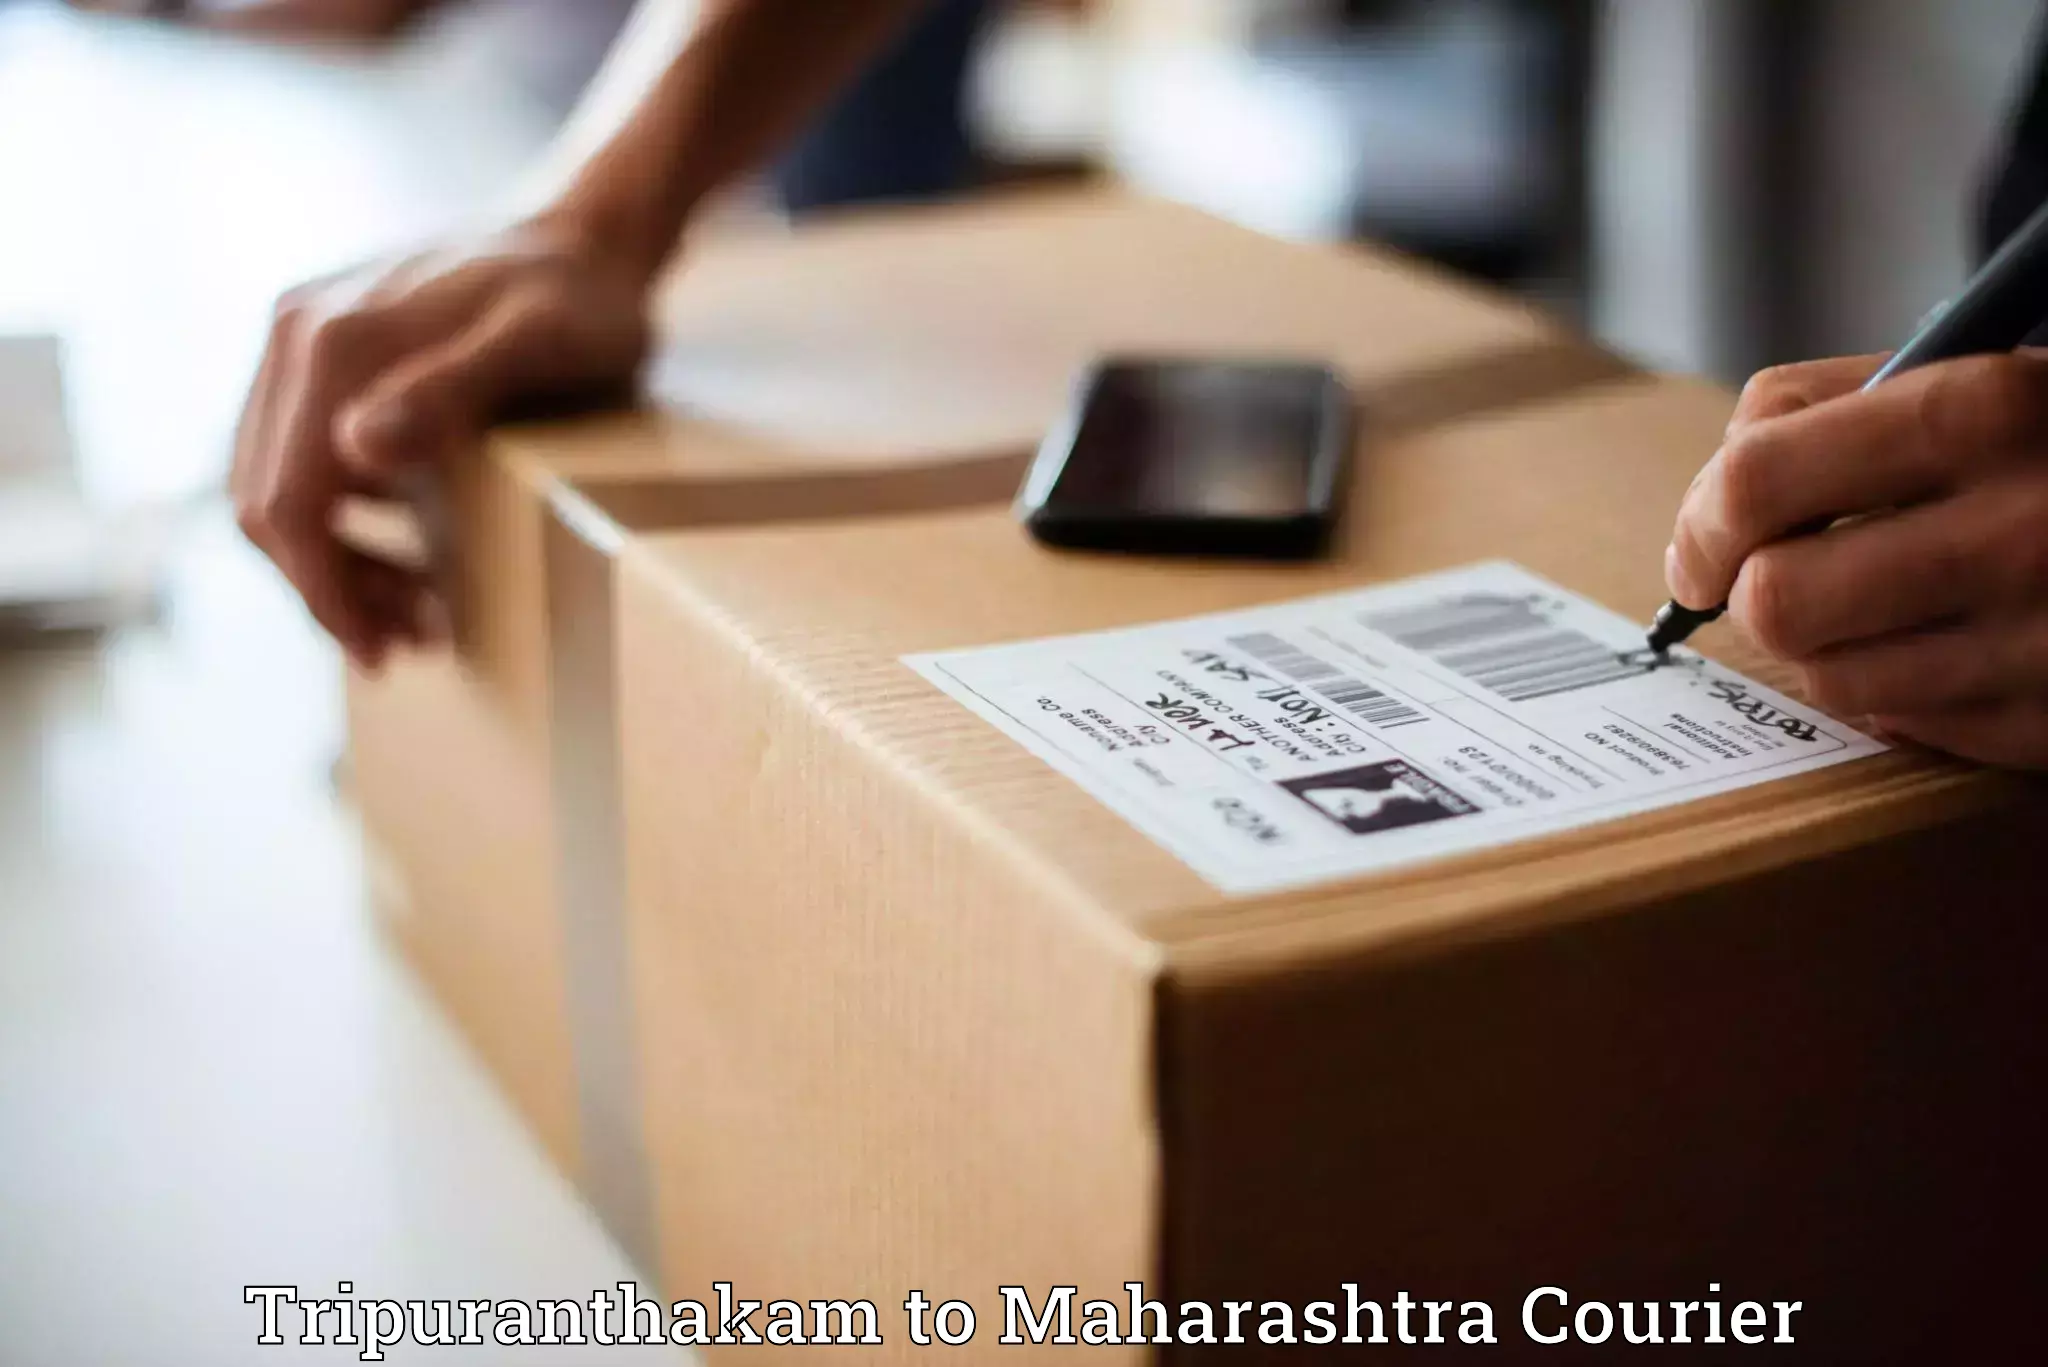 Efficient parcel delivery Tripuranthakam to Tuljapur